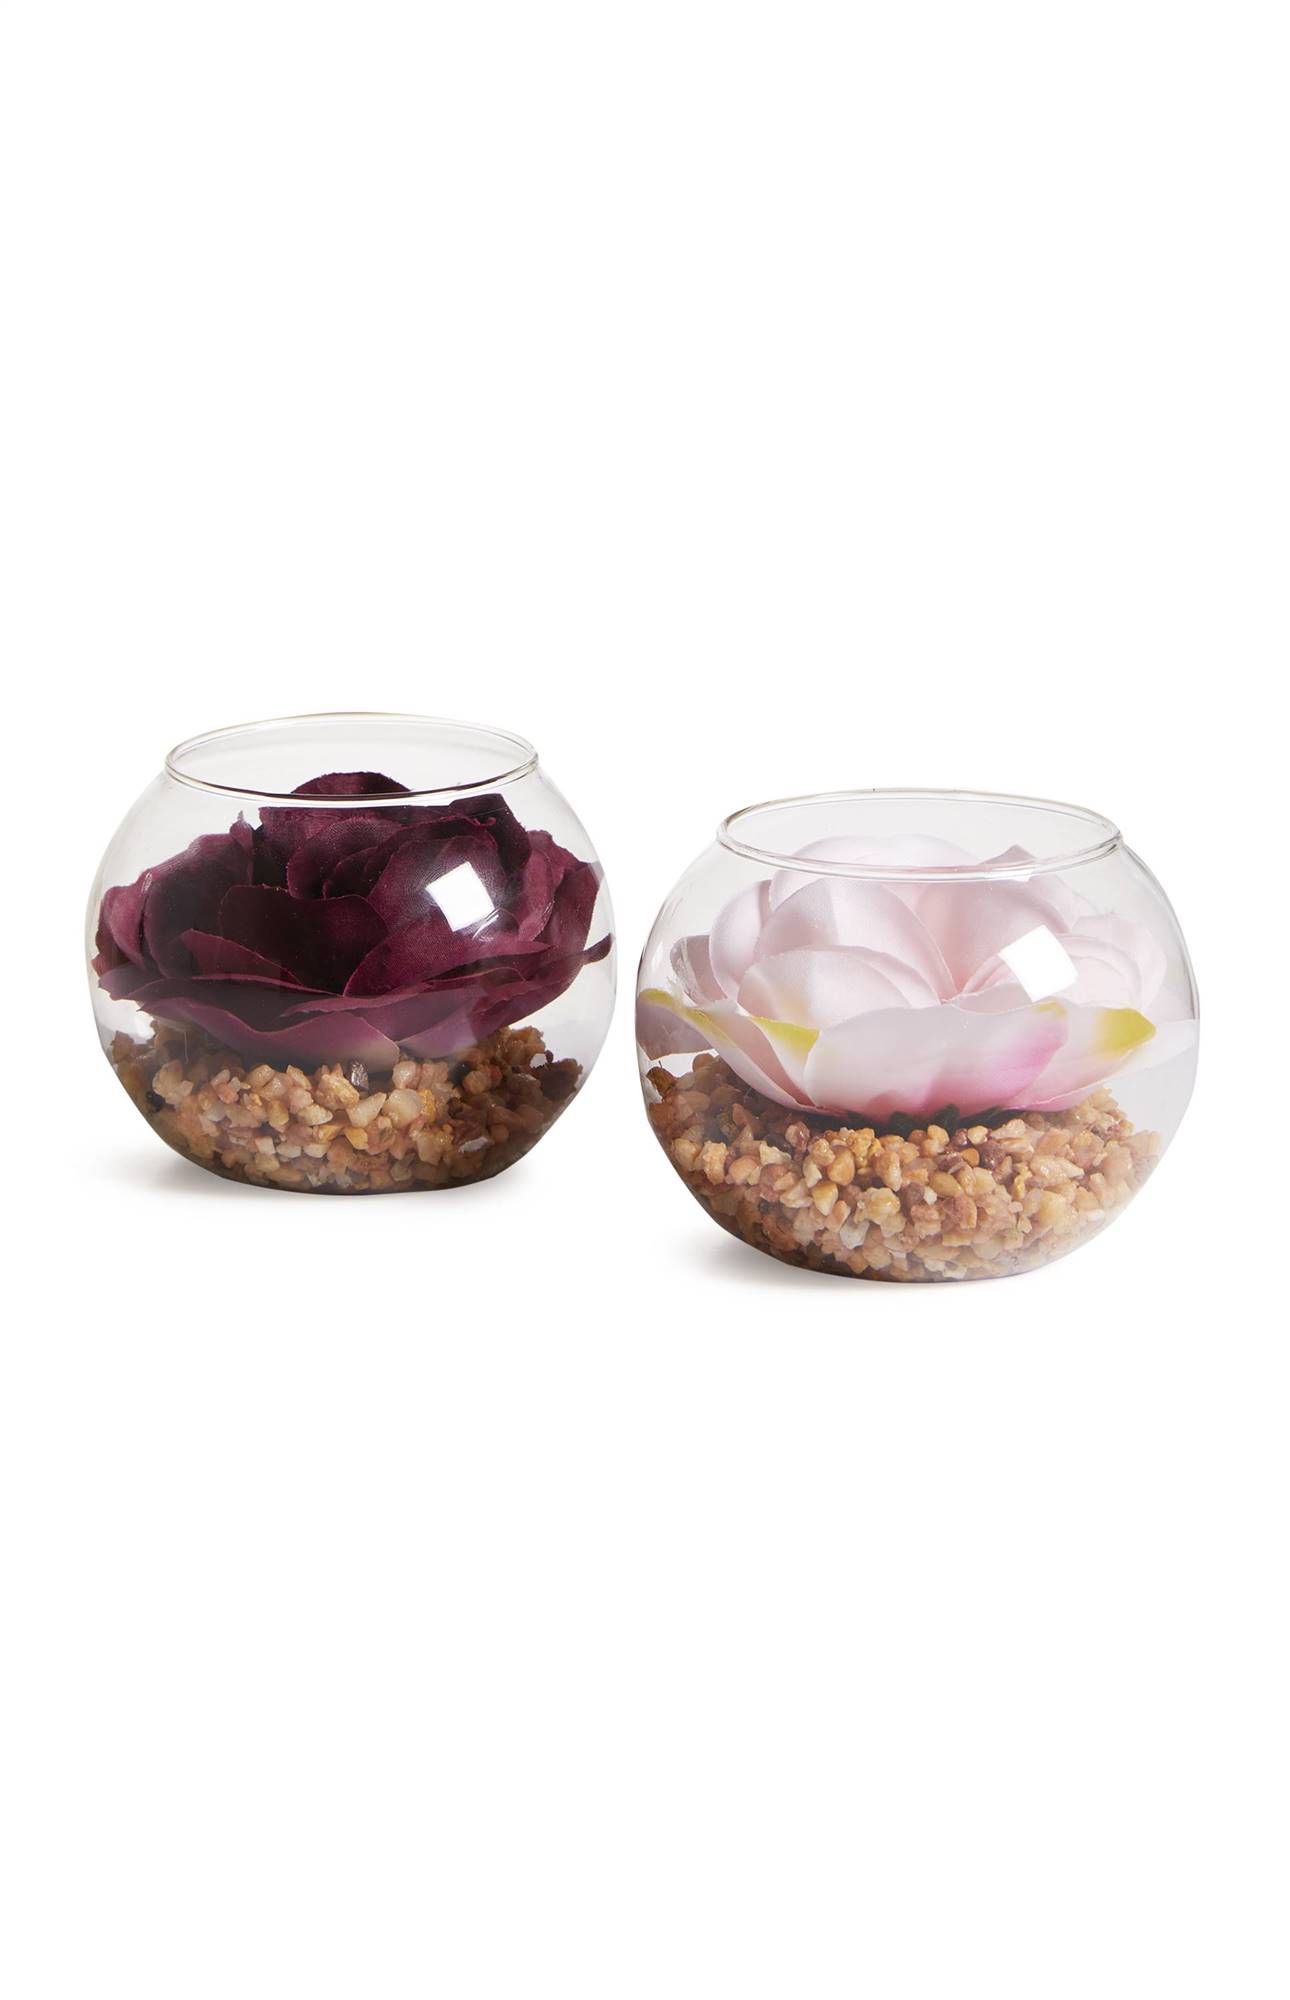 Nueva colección Primark octubre 2020. KIMBALL-0088201-01-Mini Glass Faux Flower £2 €2.50 PLN11 WK52